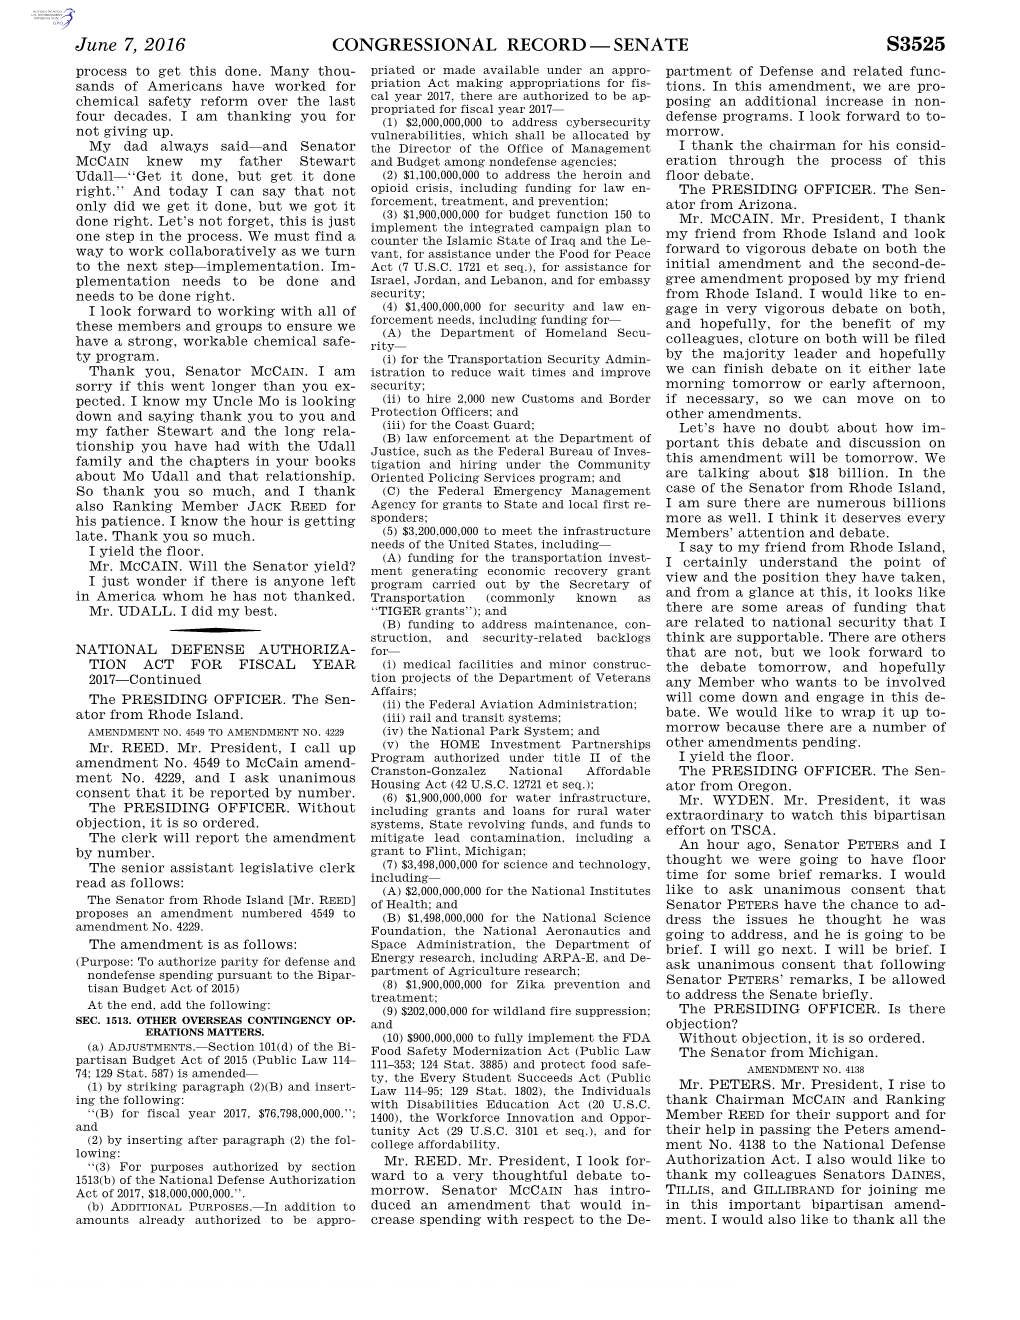 Congressional Record—Senate S3525